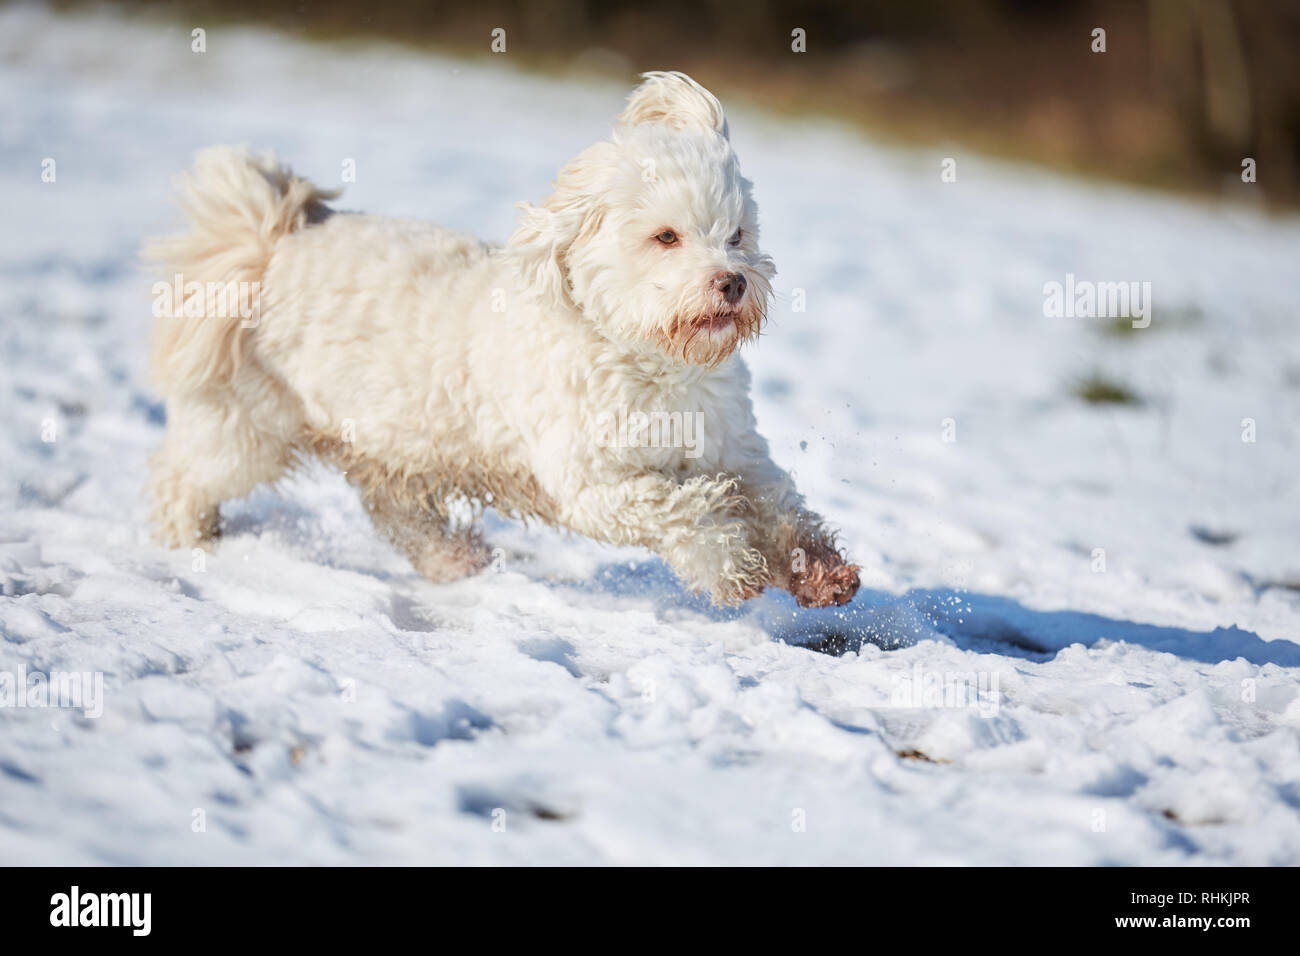 Bichon havanais blanc chien qui court dans la neige en hiver Banque D'Images